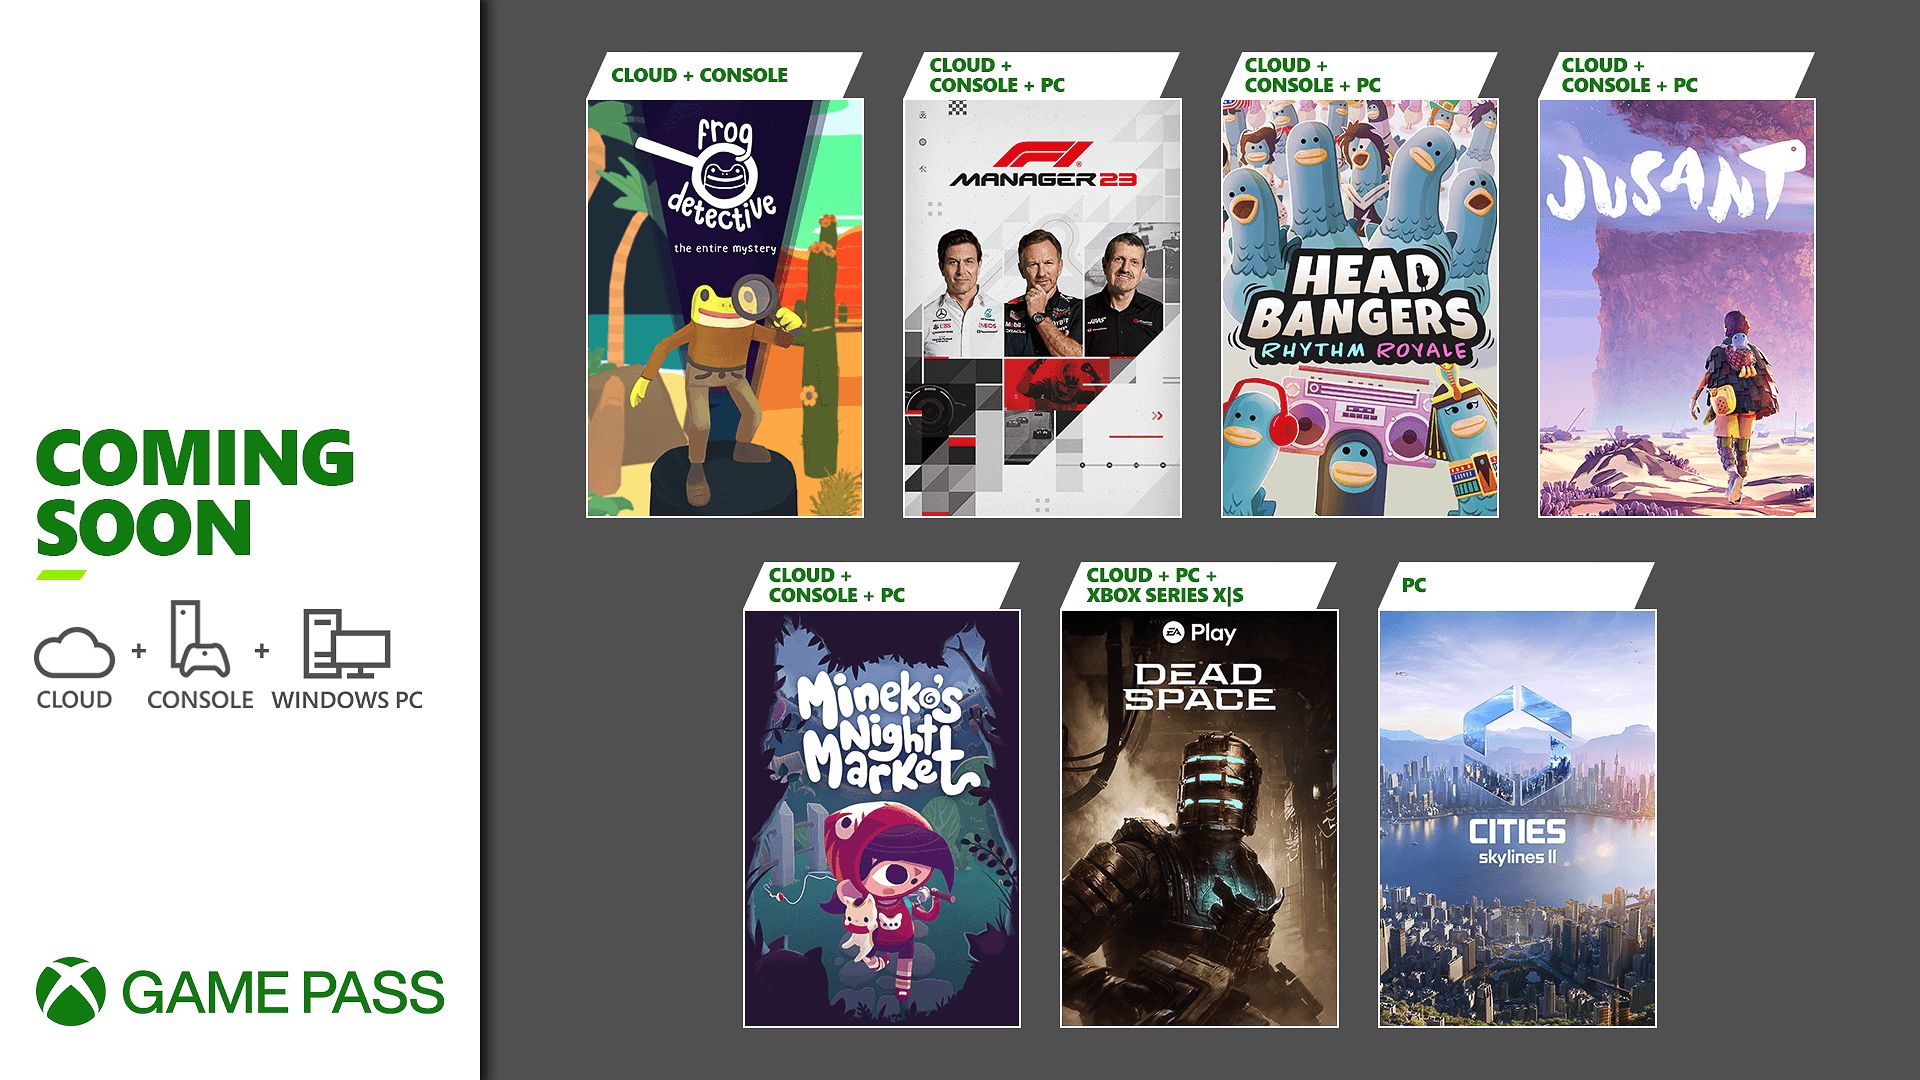 Xbox Game Pass Ultimate gratis para siempre y legal: así se puede